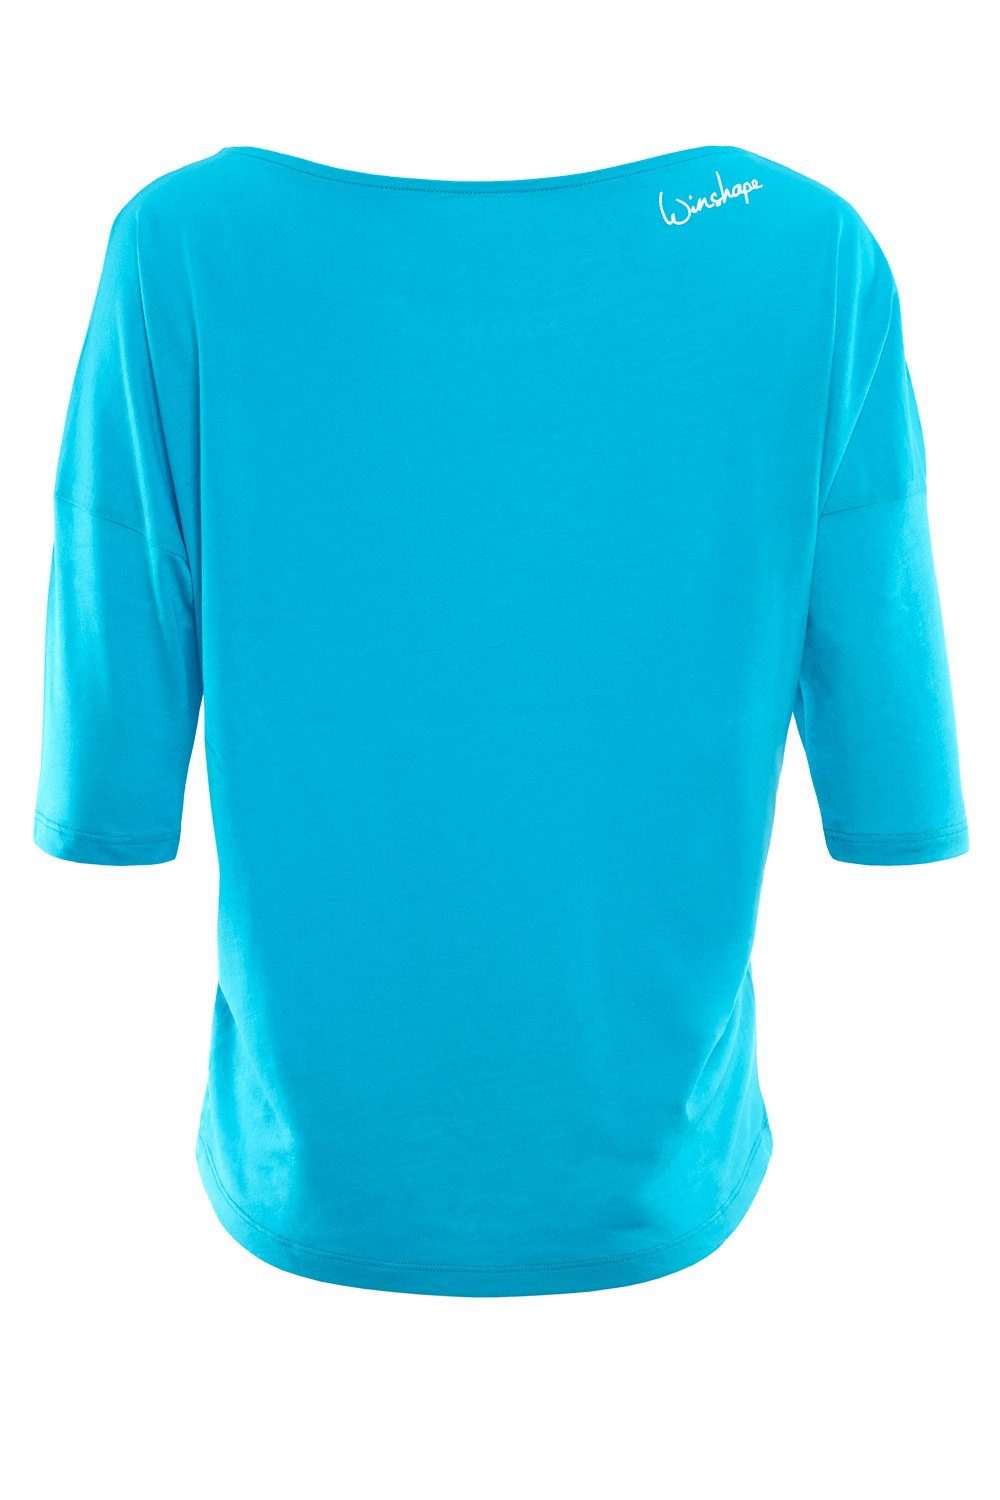 Winshape 3/4-Arm-Shirt - leicht sky glitzer mit Glitzer-Aufdruck ultra weißem MCS001 blue weiß